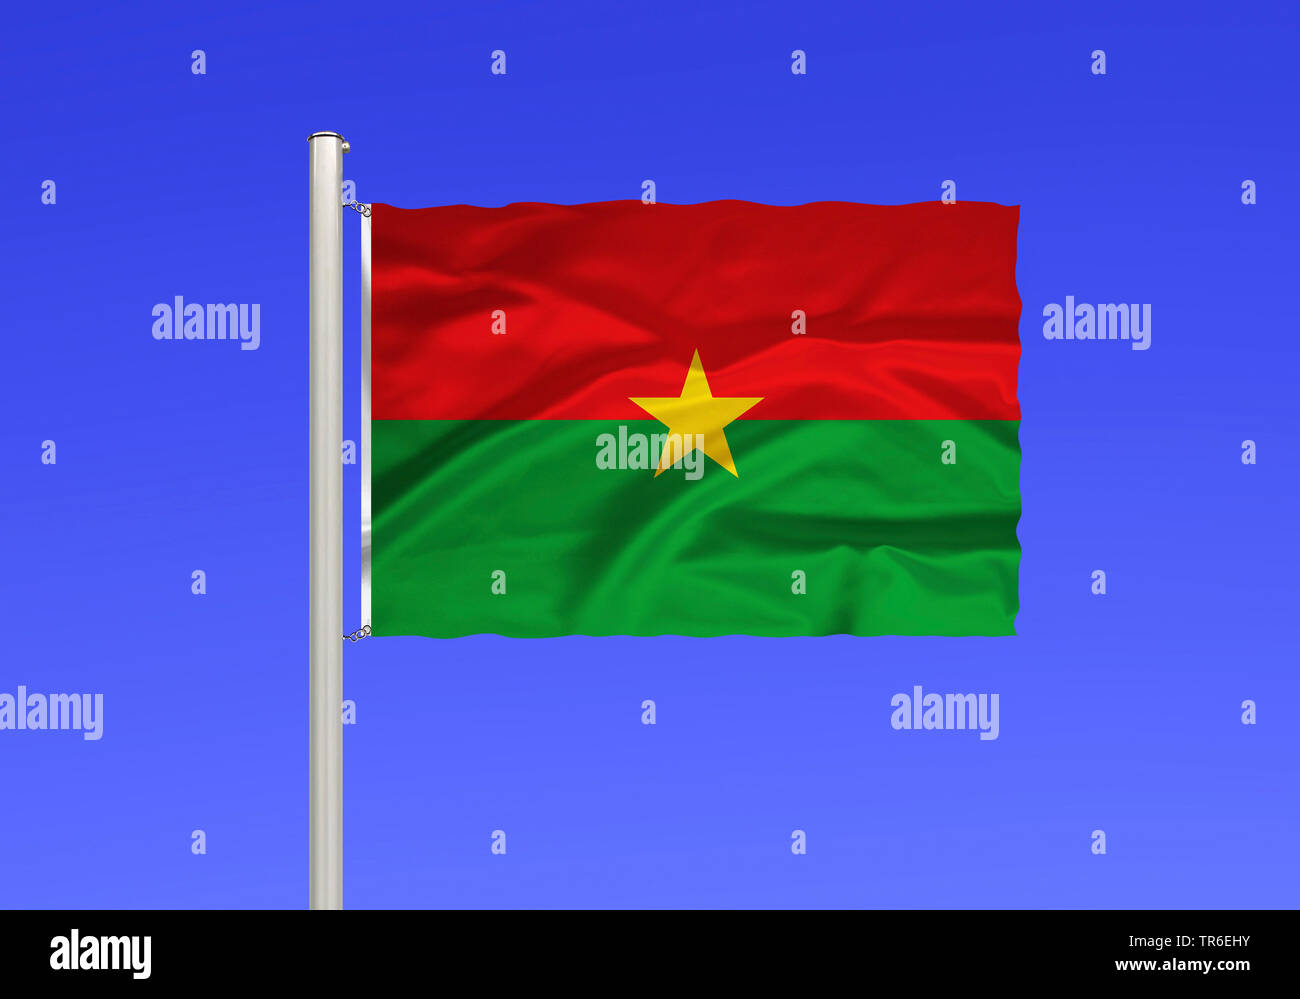 Drapeau du Burkina Faso contre le ciel bleu, le Burkina Faso Banque D'Images